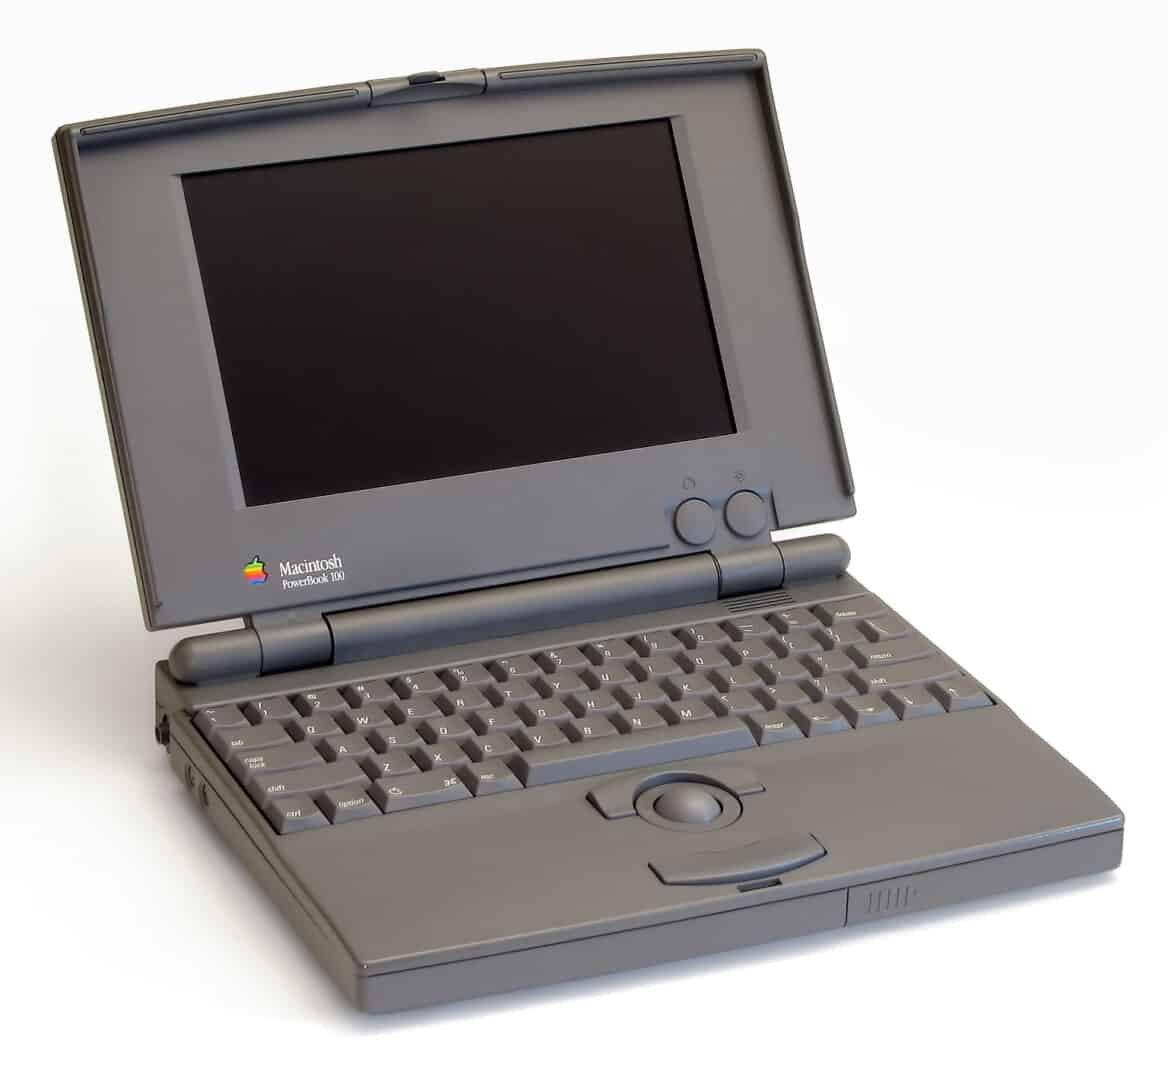 Macintosh Powerbook 100